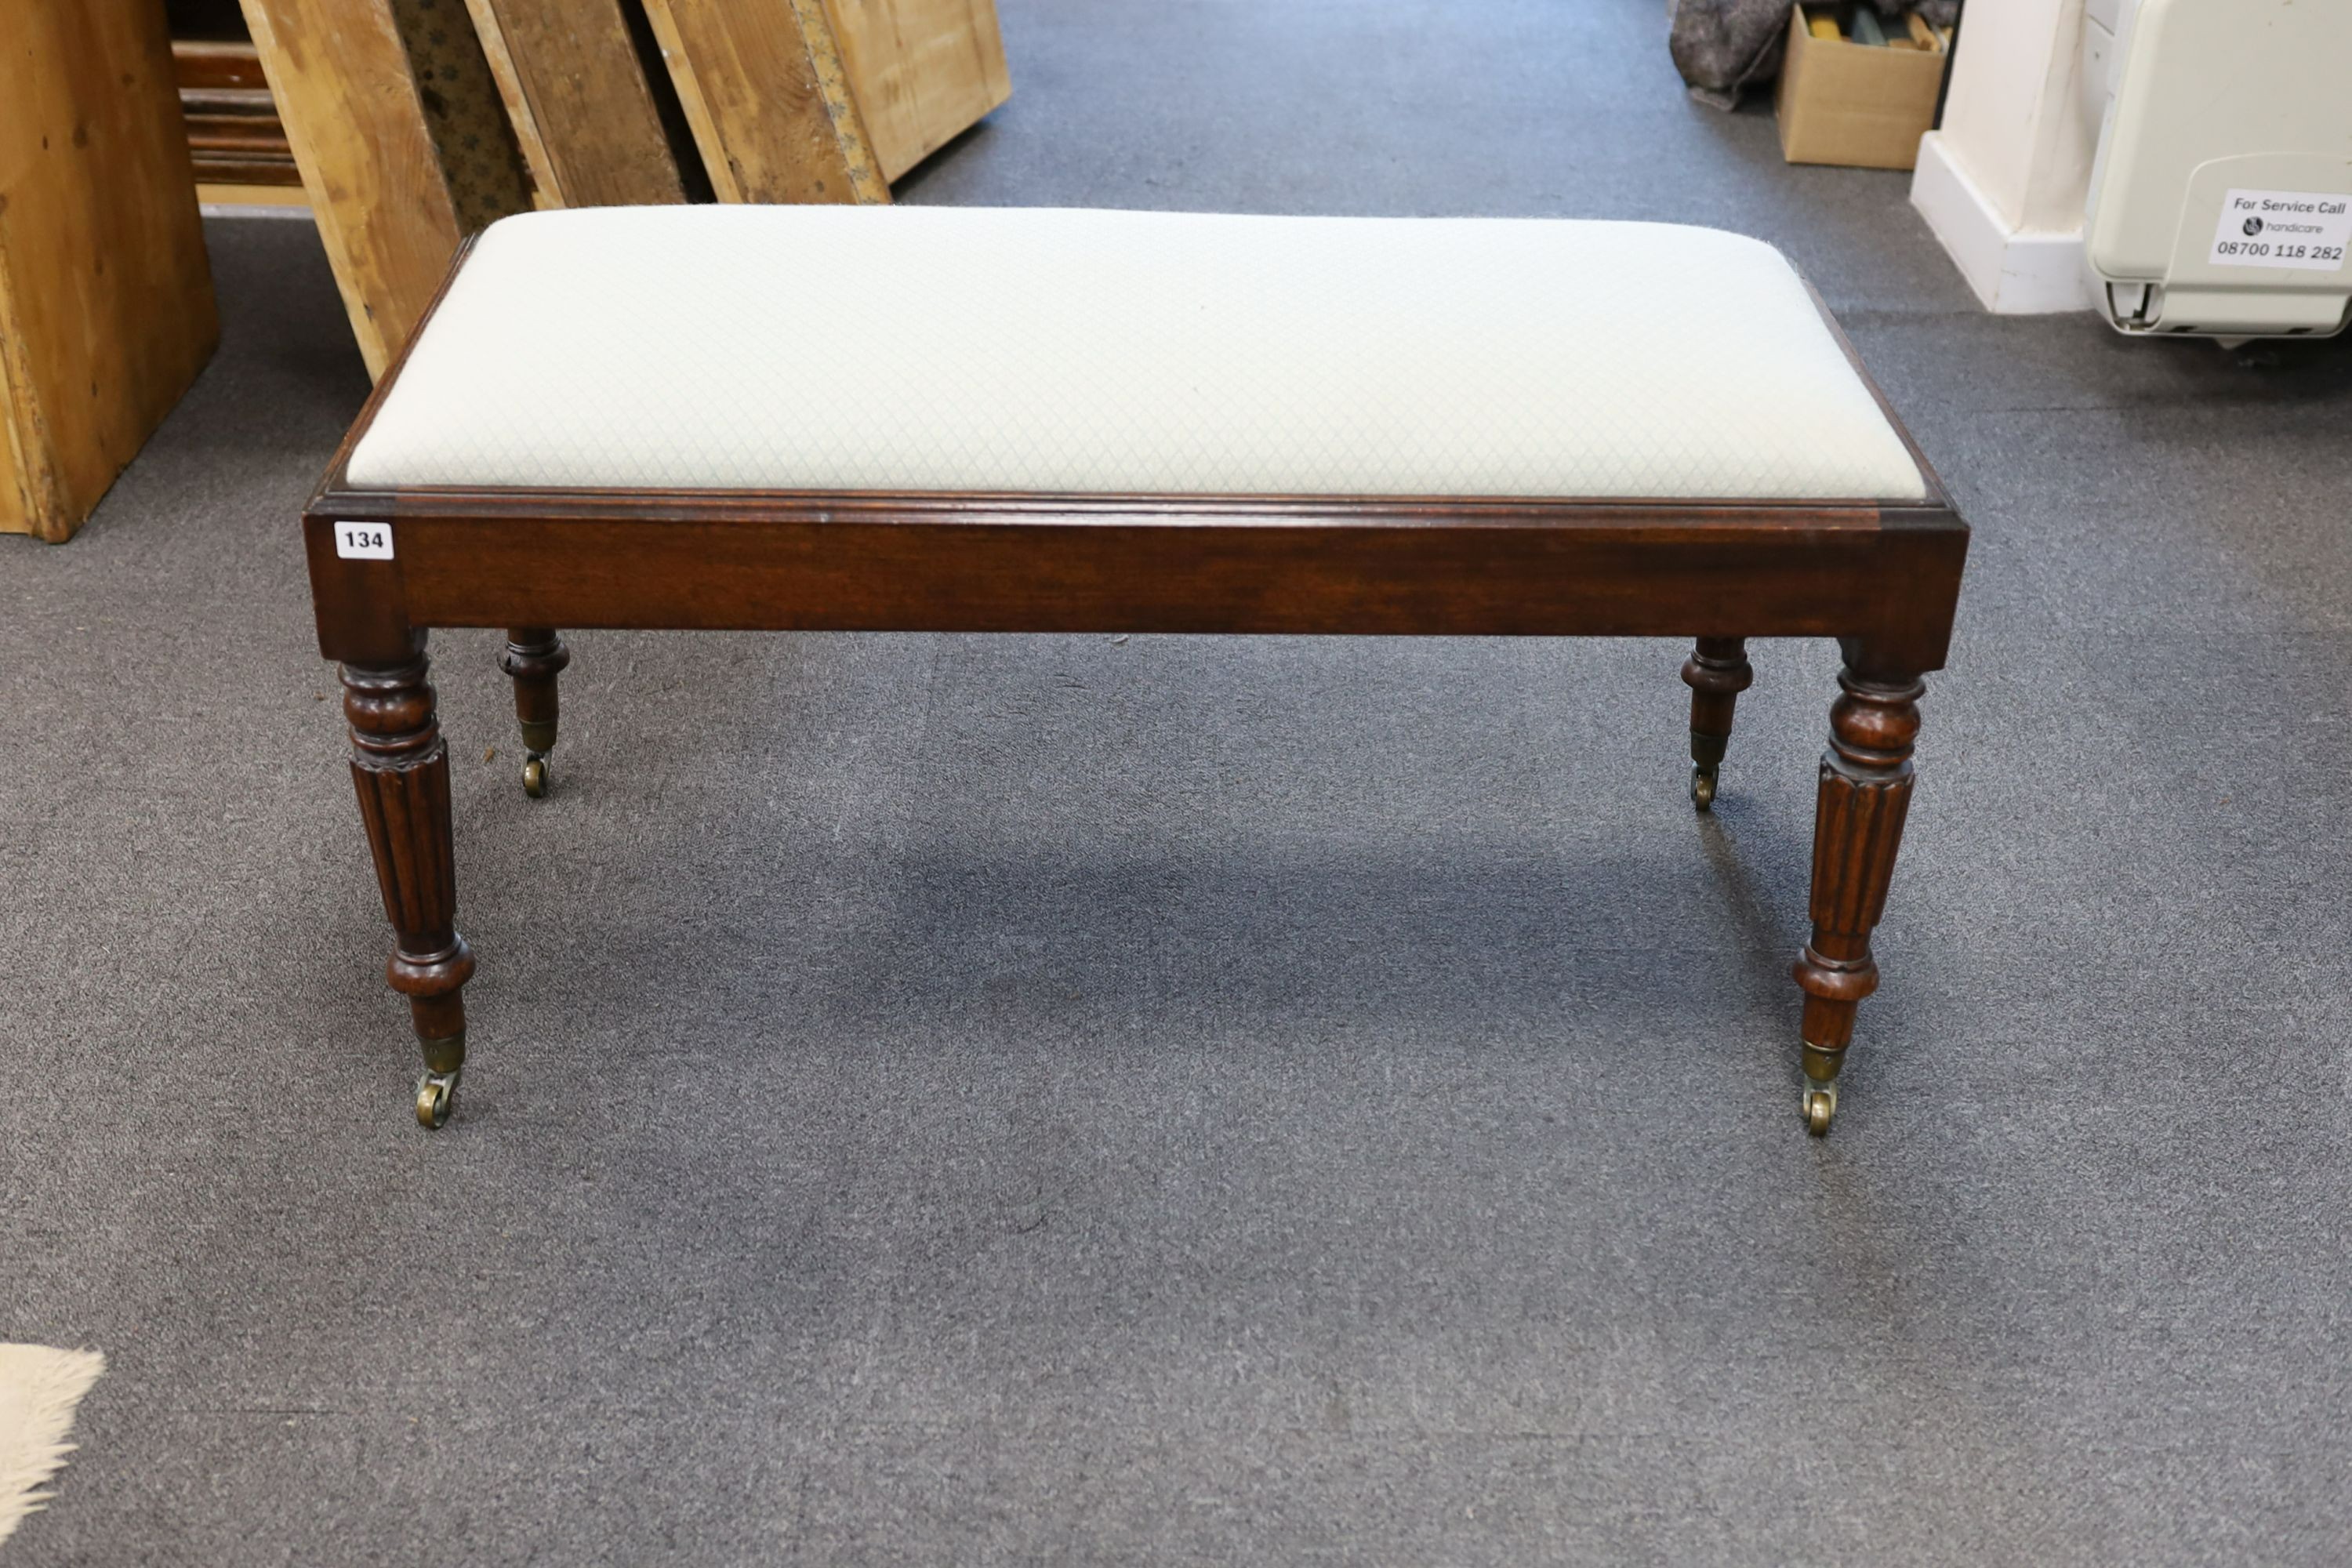 A Regency rectangular mahogany dressing stool, length 96cm, depth 46cm, height 46cm